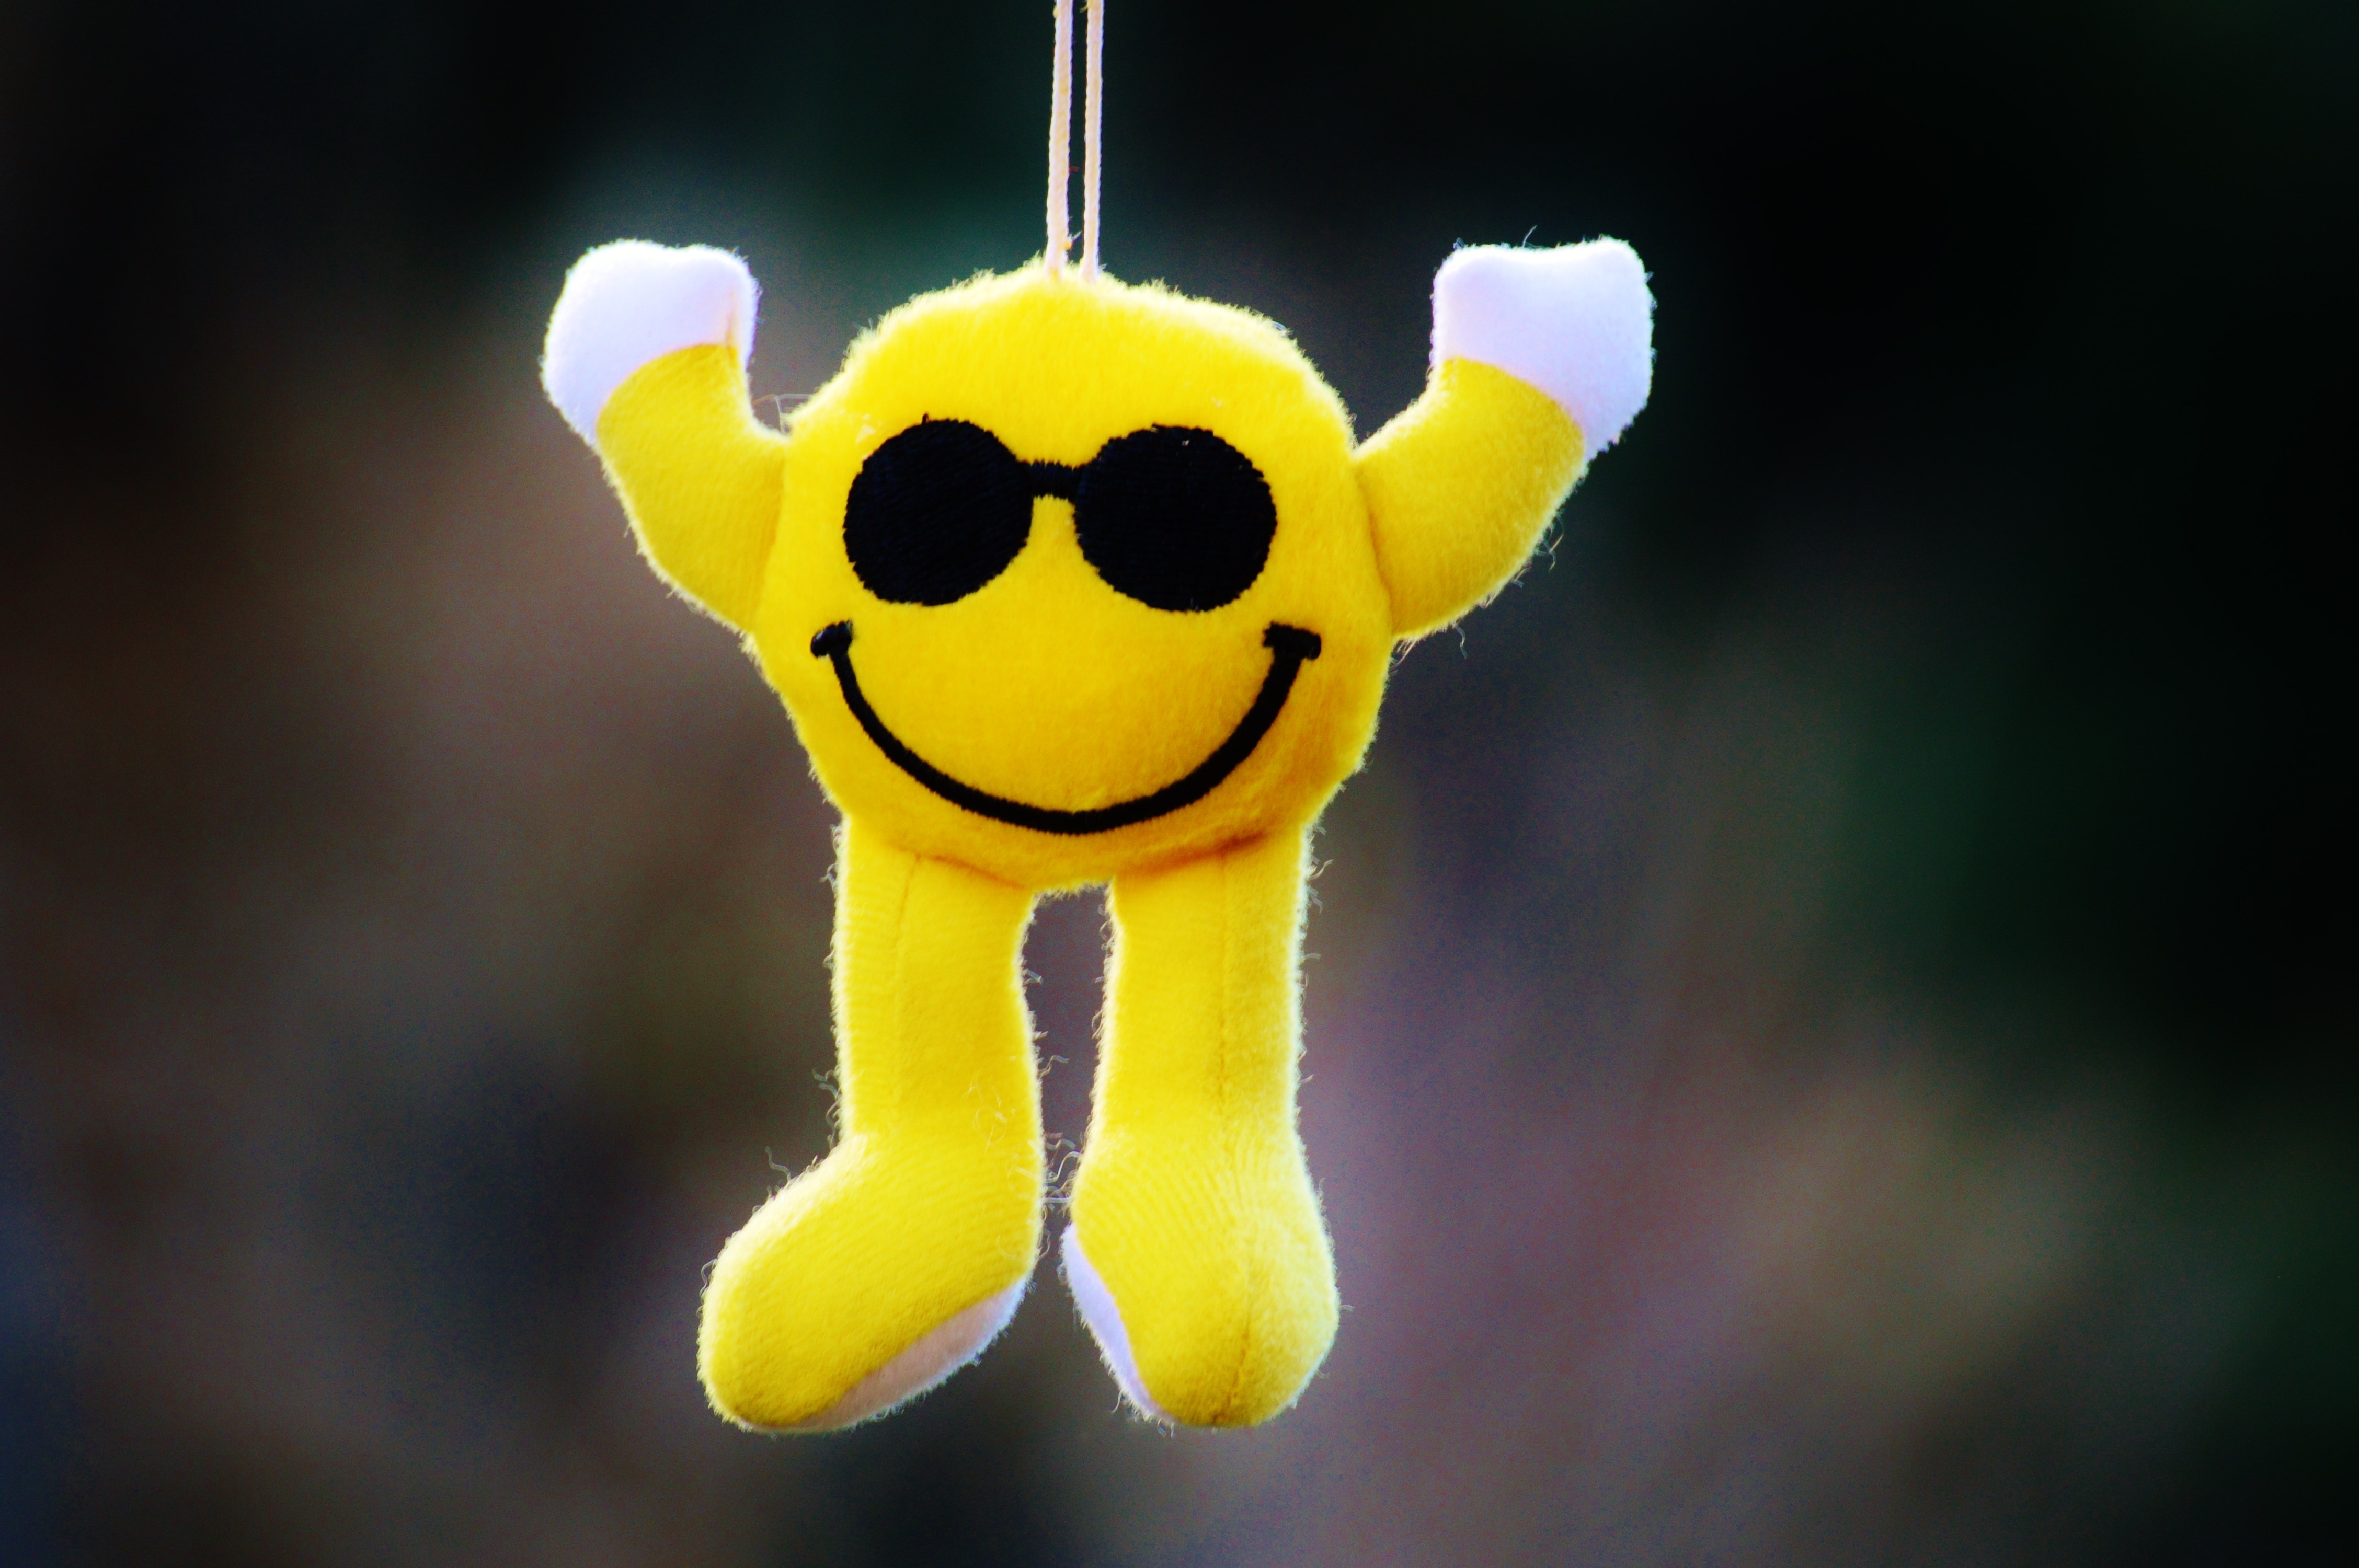 yellow smiley plush toy